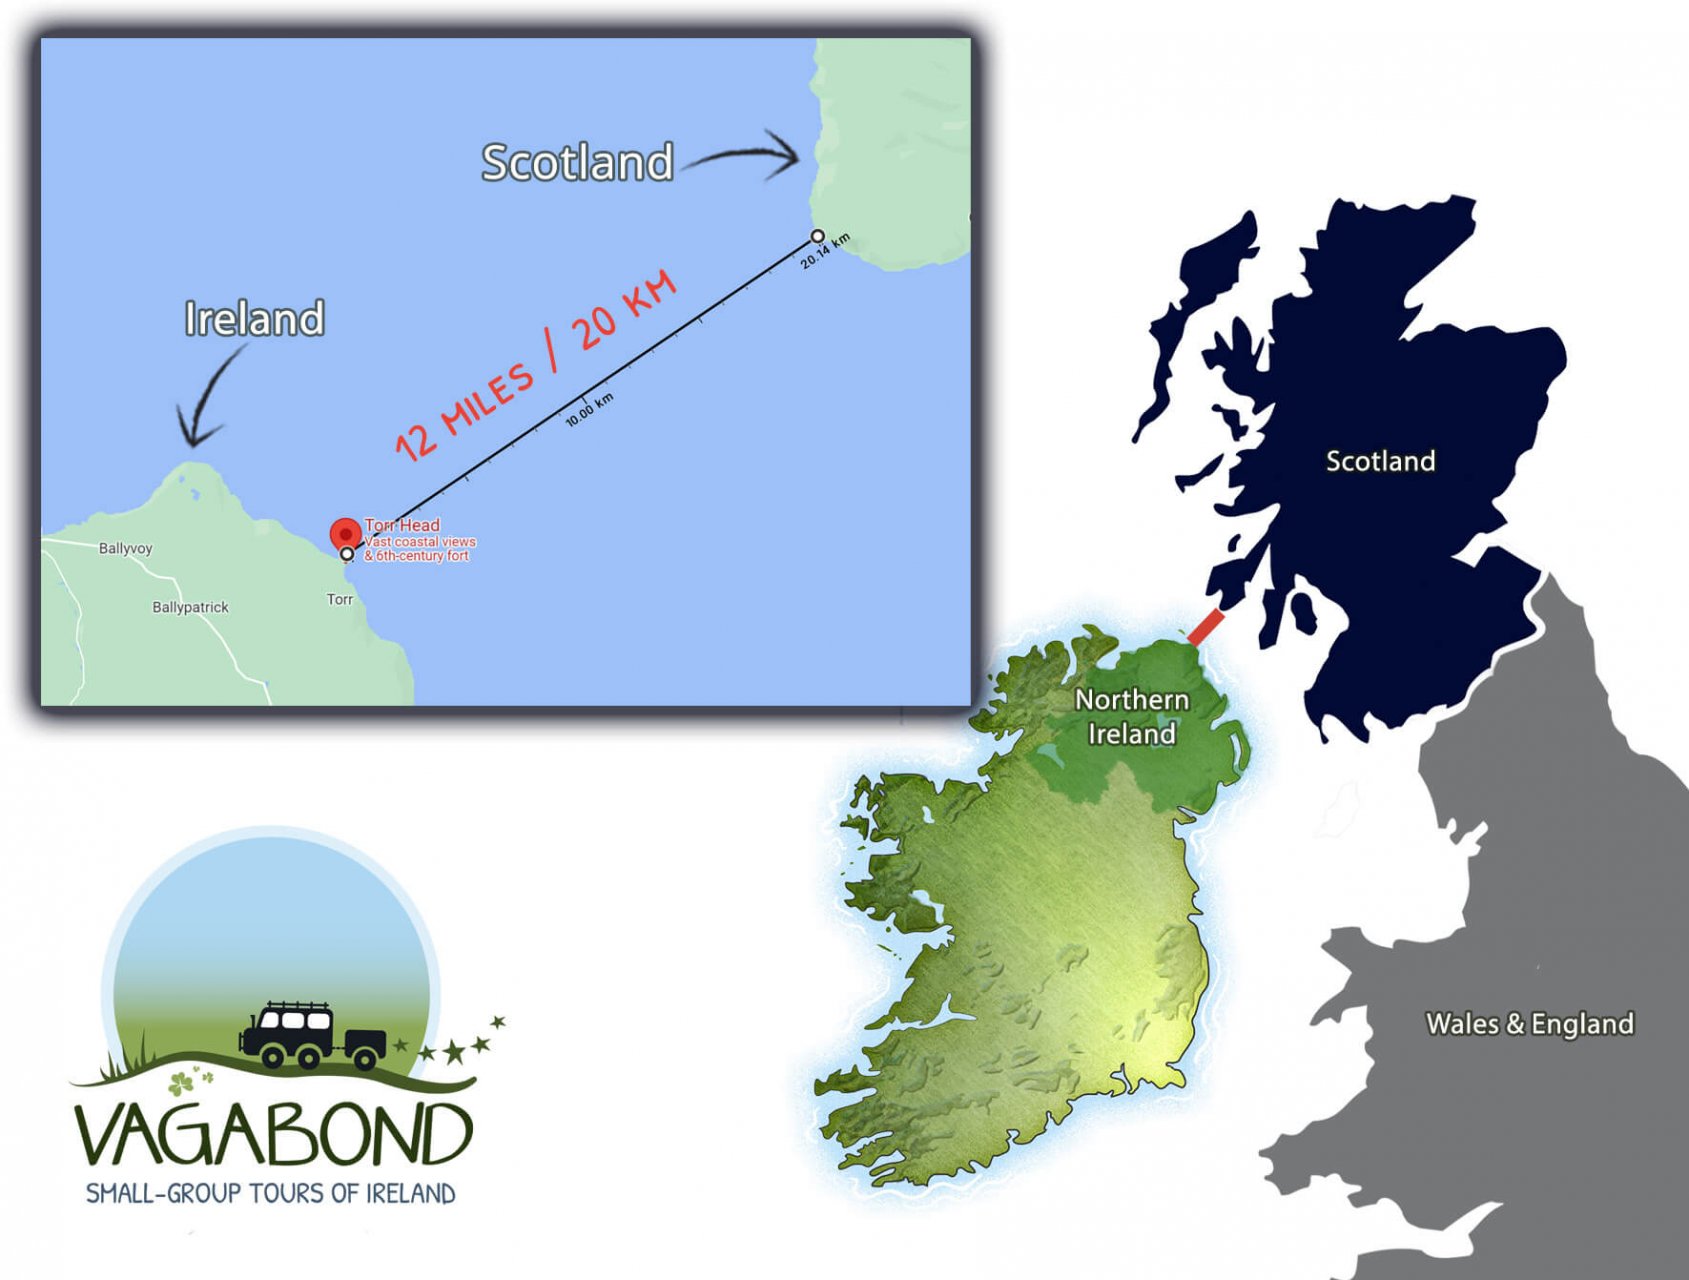 https://vagabondtoursofireland.com/images-adventures/blog/scotland/map-ireland-scotland-distance-how-far-vagabond-logo.jpg?w1366;h1035;